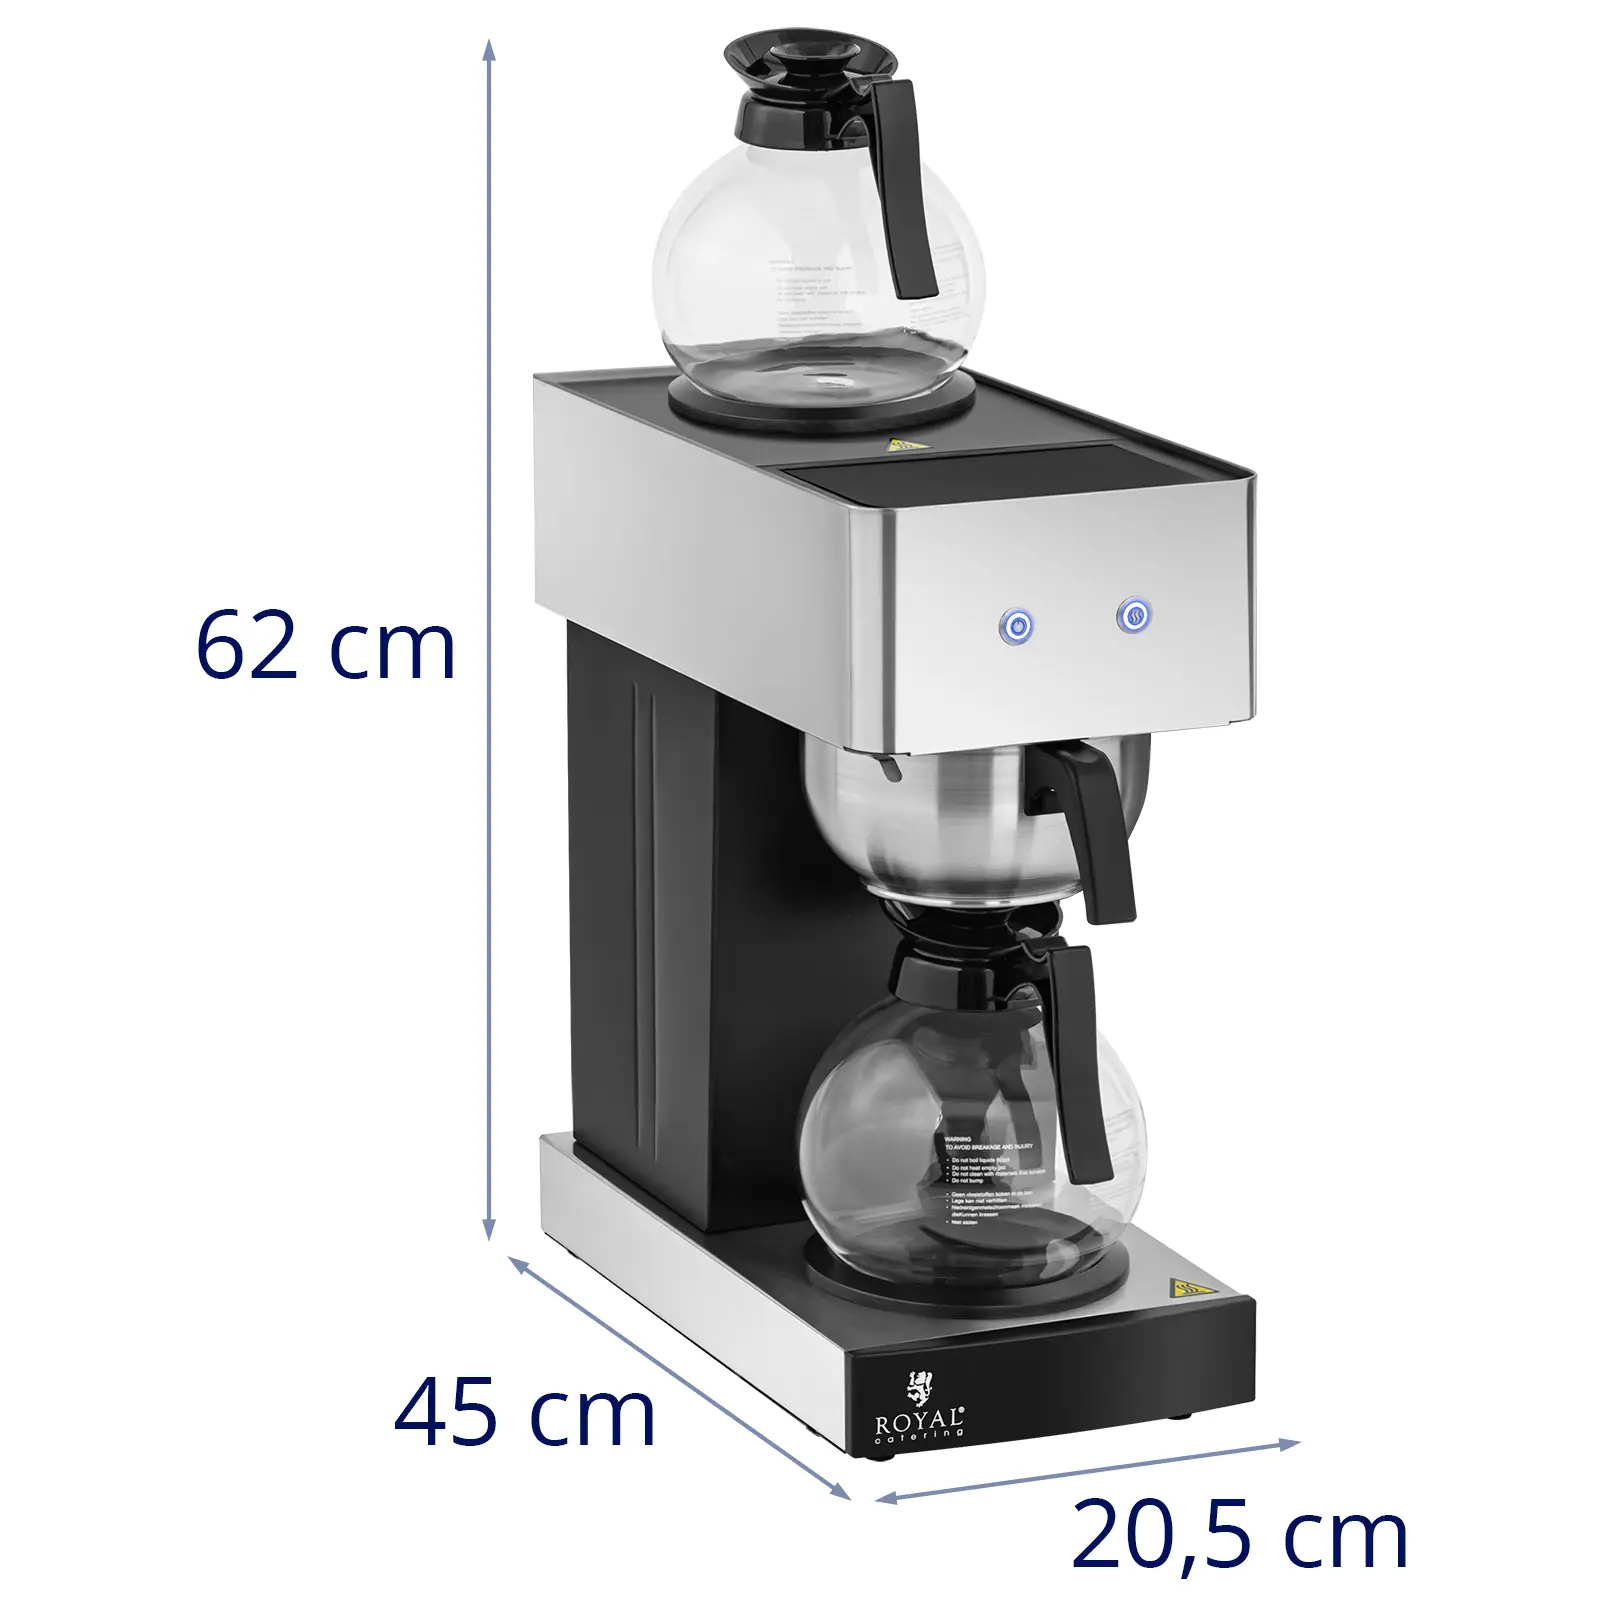 Kaffebryggare - 2 x 1,8 l - 2 värmeplattor - Med 2 glaskannor